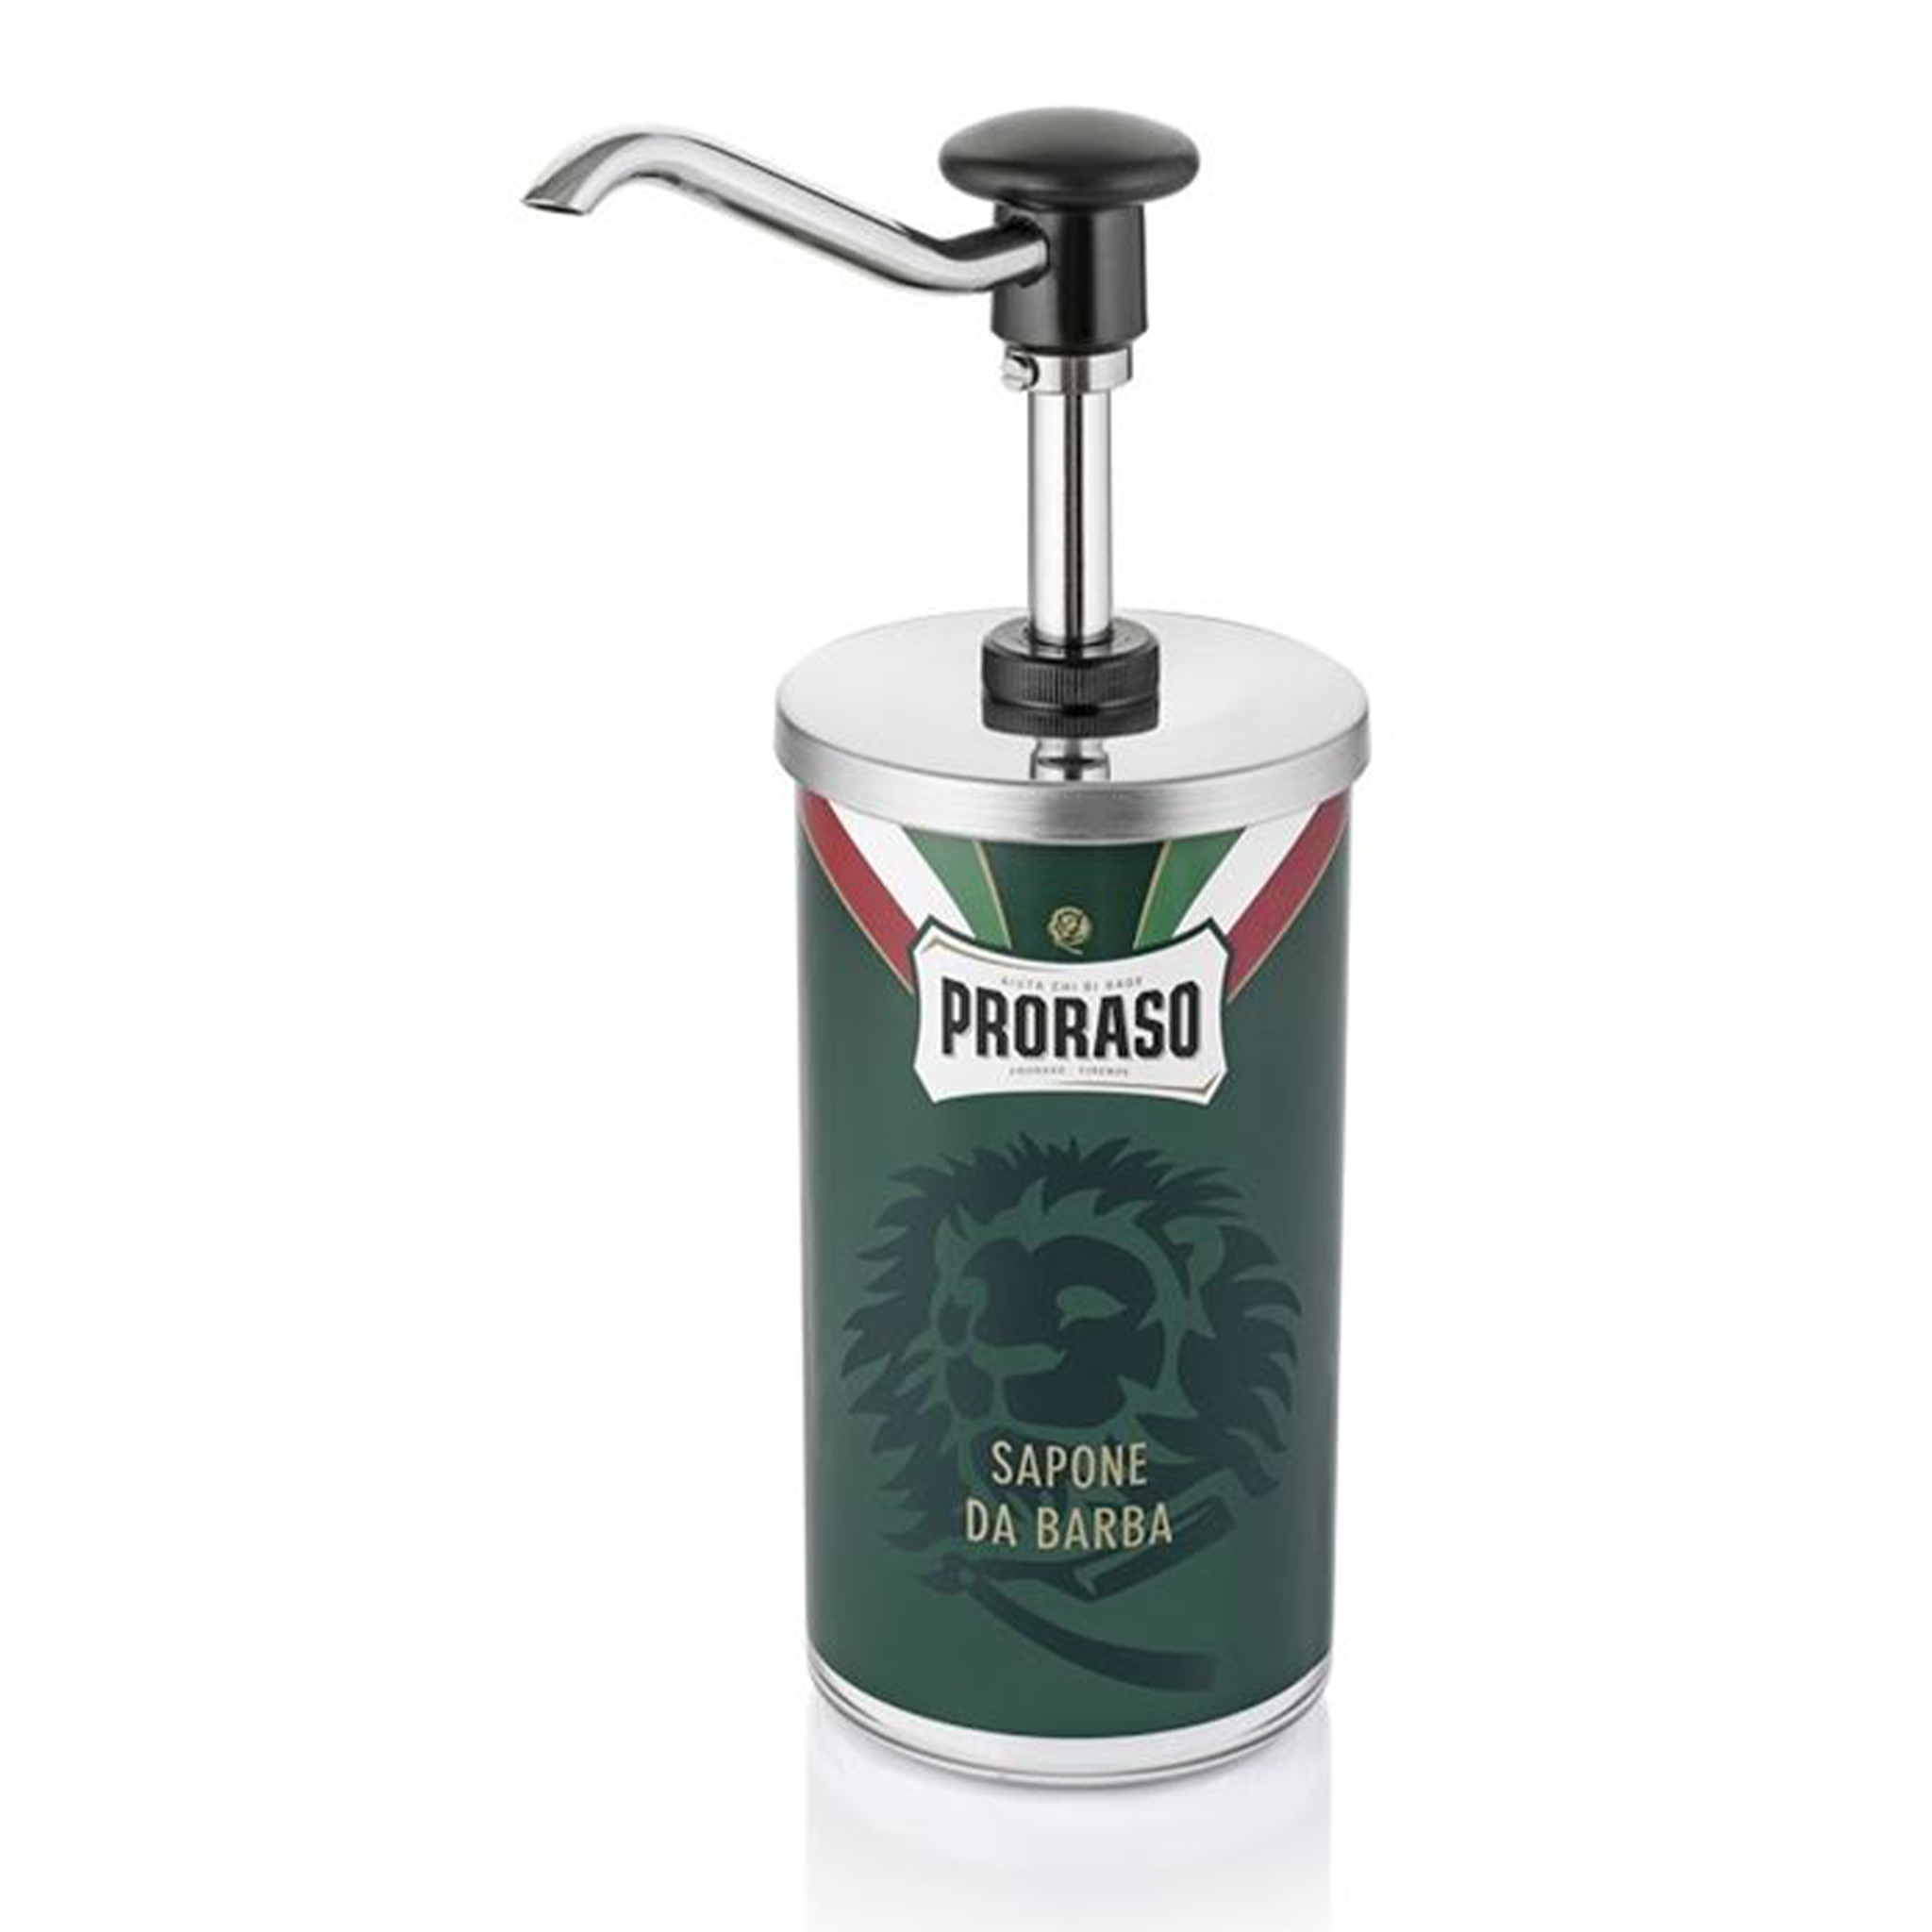 Proraso Shaving Cream Dispenser - 1kg